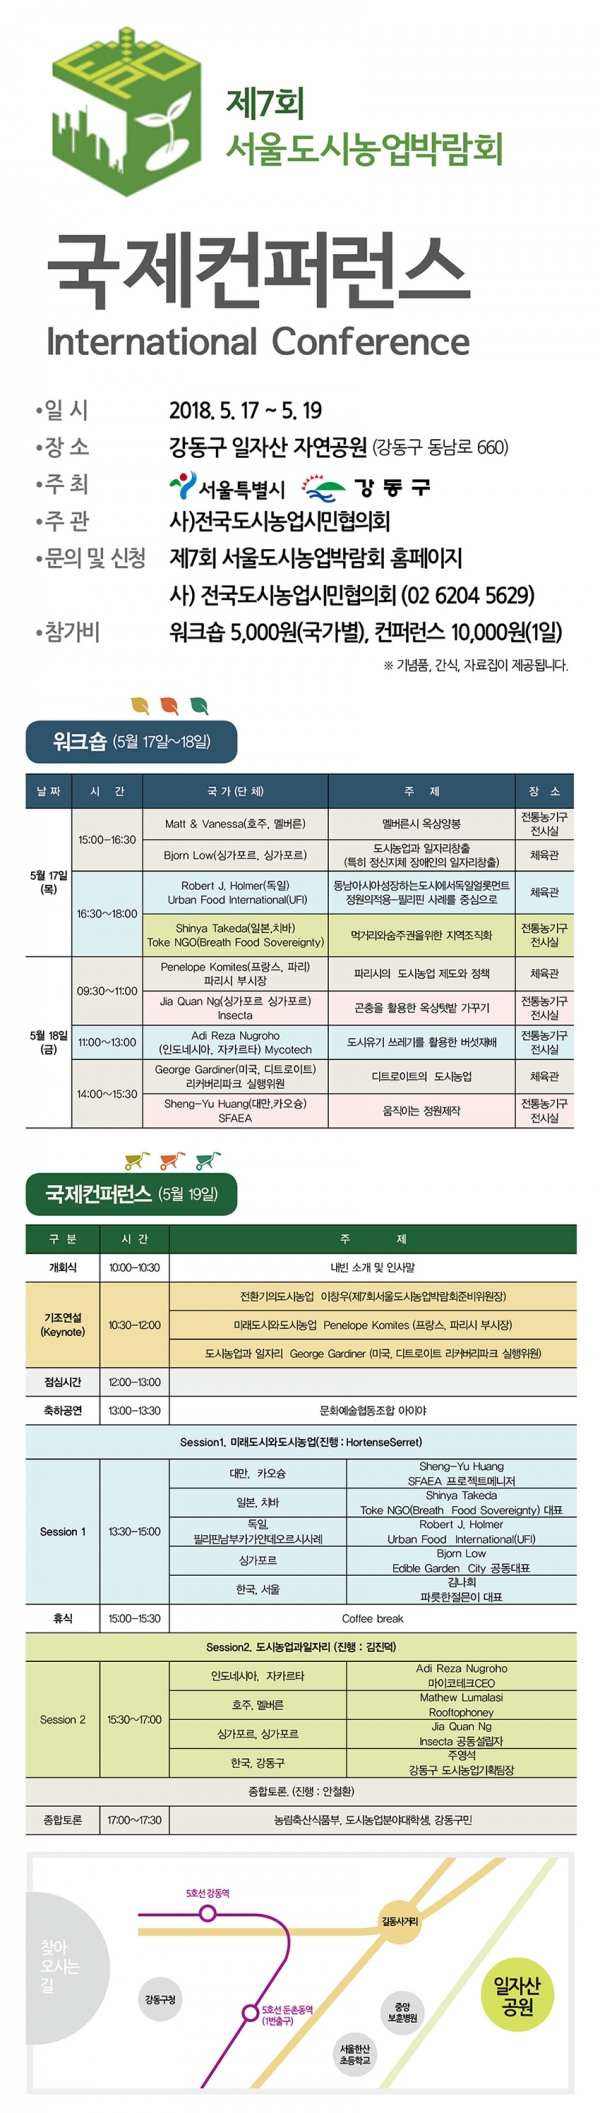 제7회 서울도시농업박람회 워크숍 및 국제콘퍼런스 일정